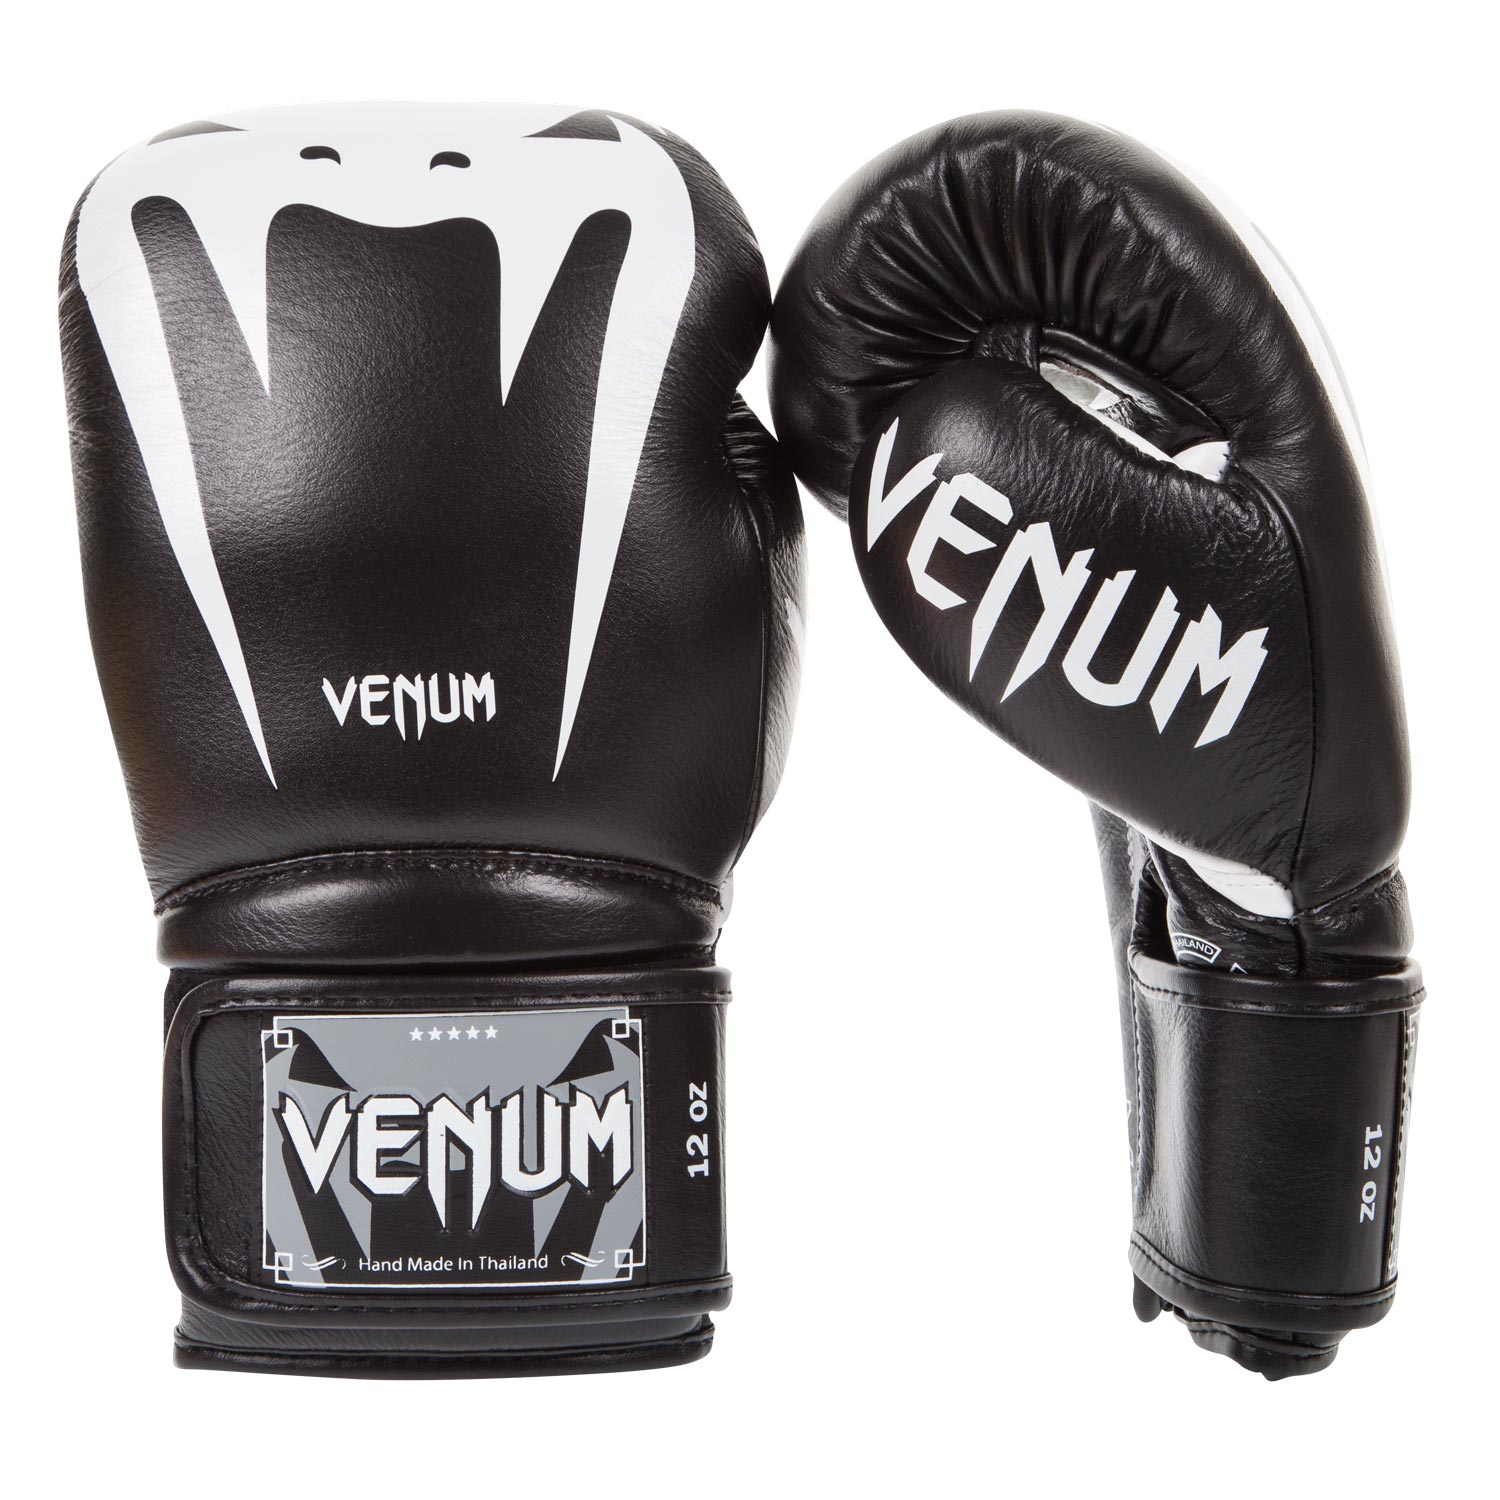 Venum Femme Giant 3.0 Gants de boxe, Noir / Blanc, 12 oz EU